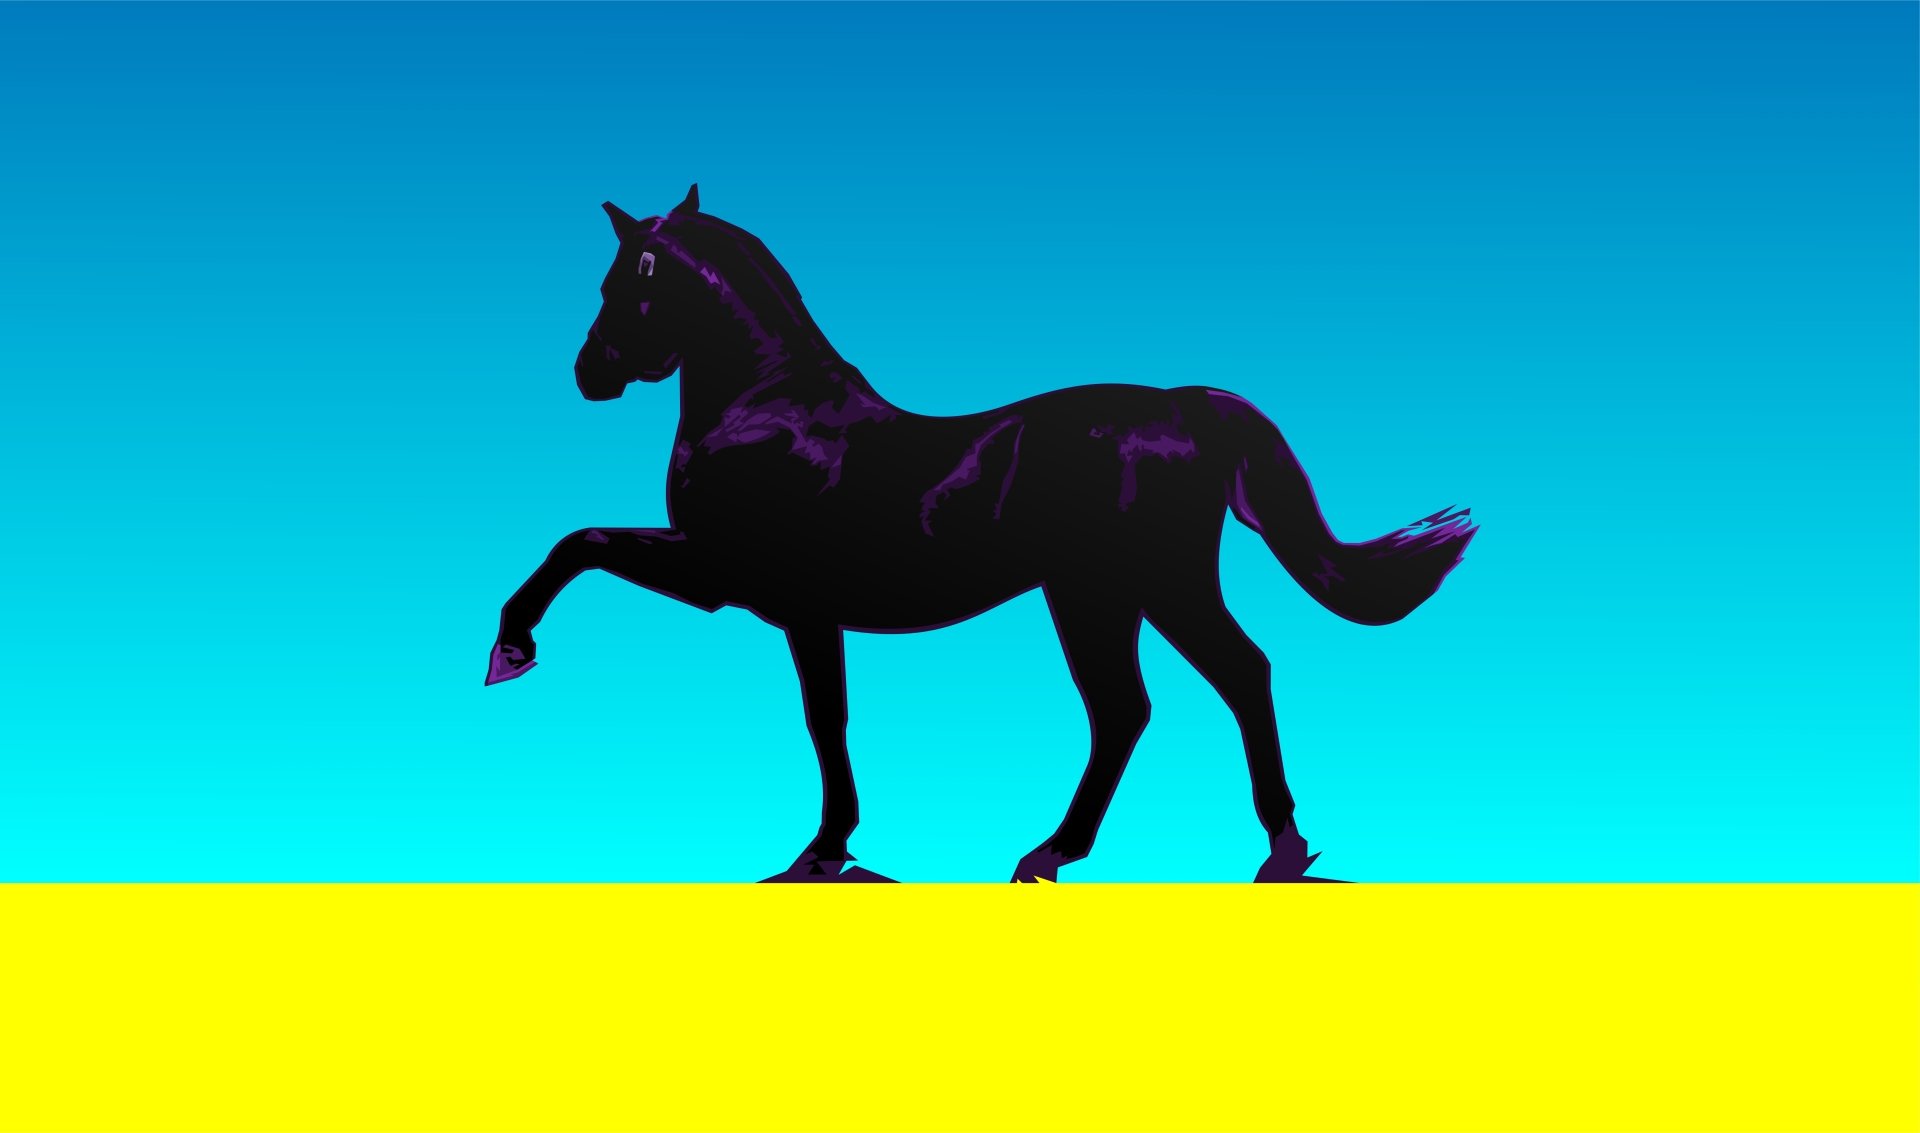 Black Horse by zelko